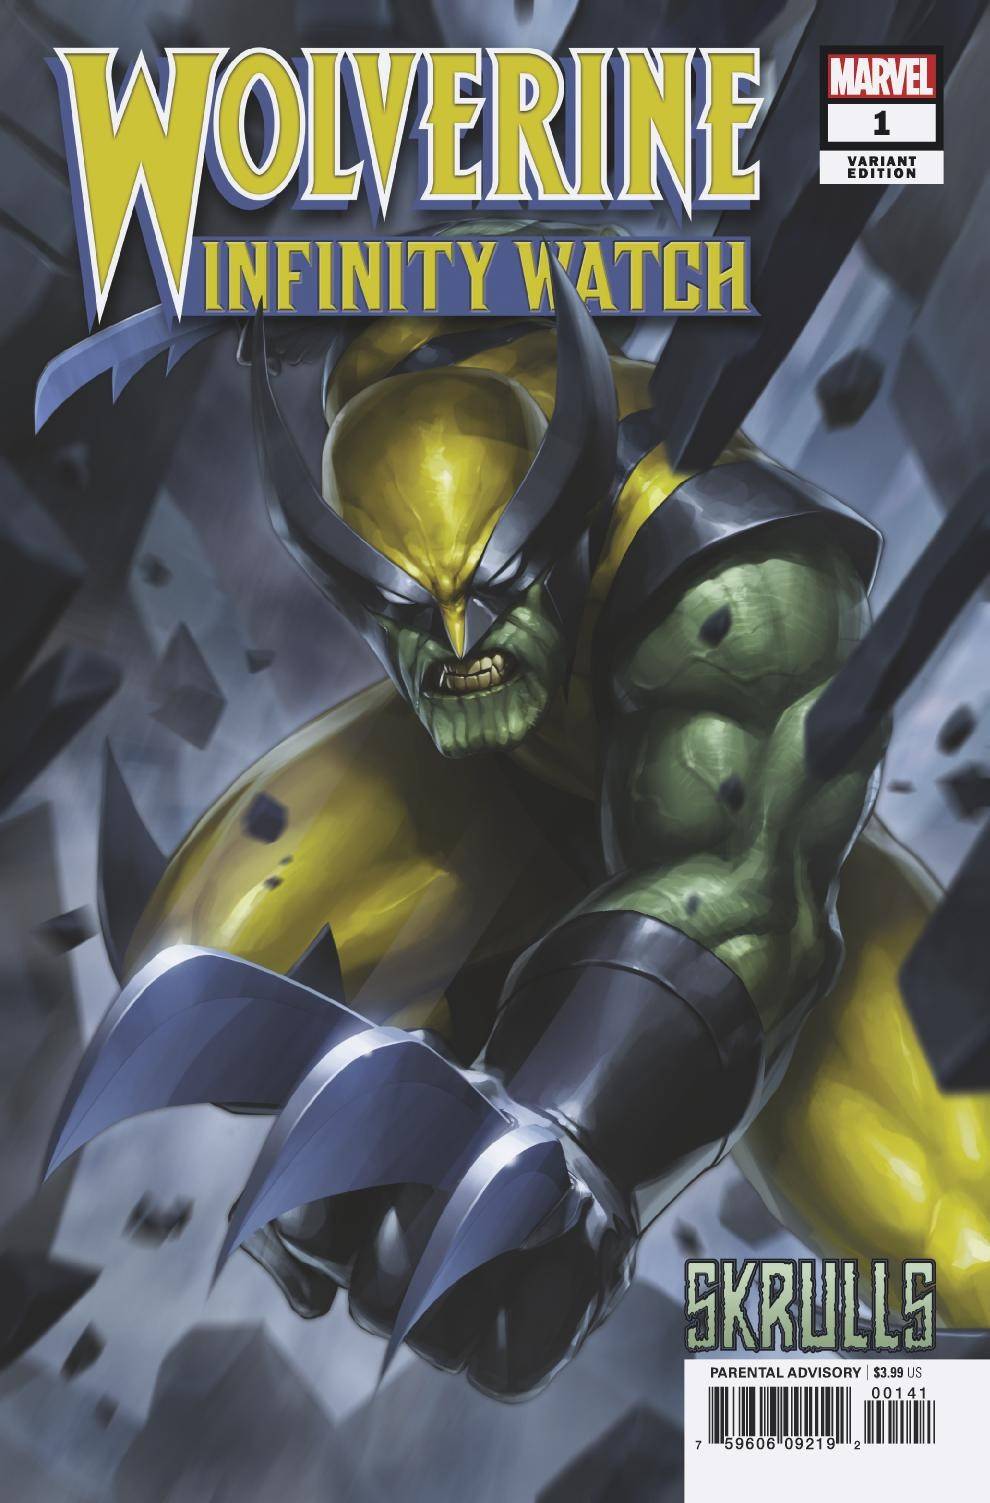 WOLVERINE INFINITY WATCH #1 B (OF 5) Marvel Jeehyung Lee SKRULLS Variant Gerry Duggan (02/20/2019)